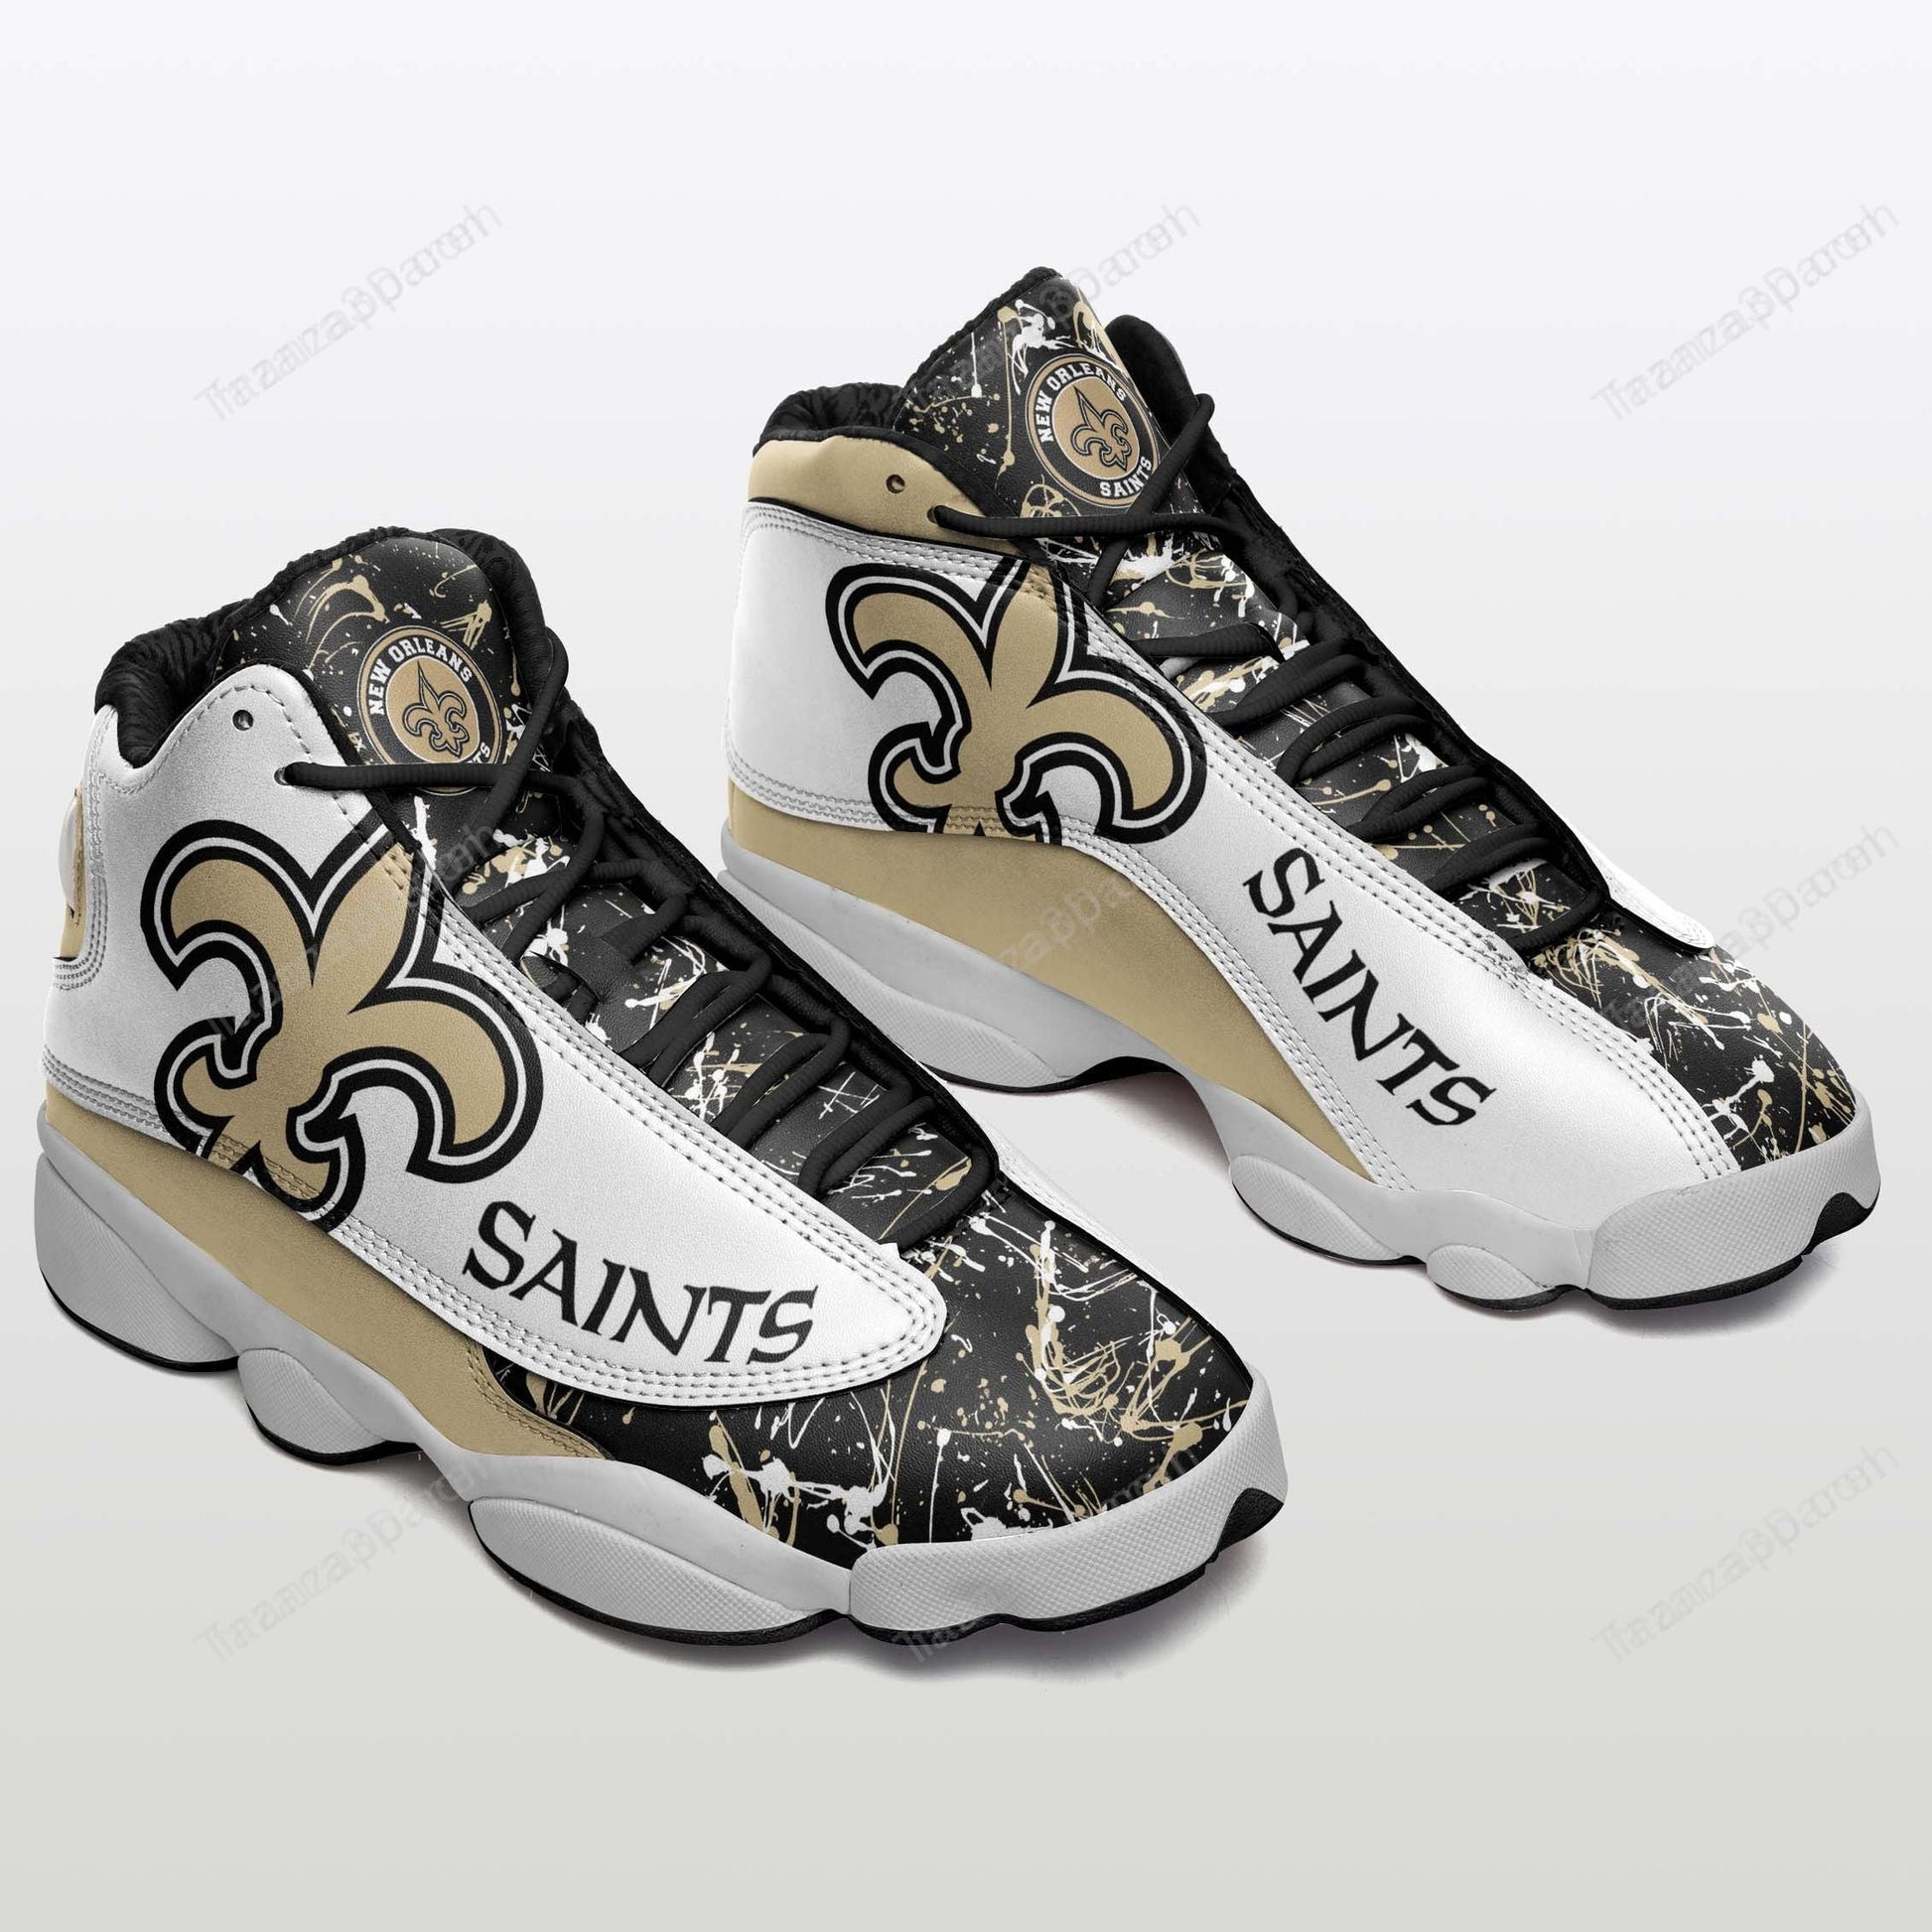 New Orleans Saints Ajd13 Sneakers 703-Gear Wanta